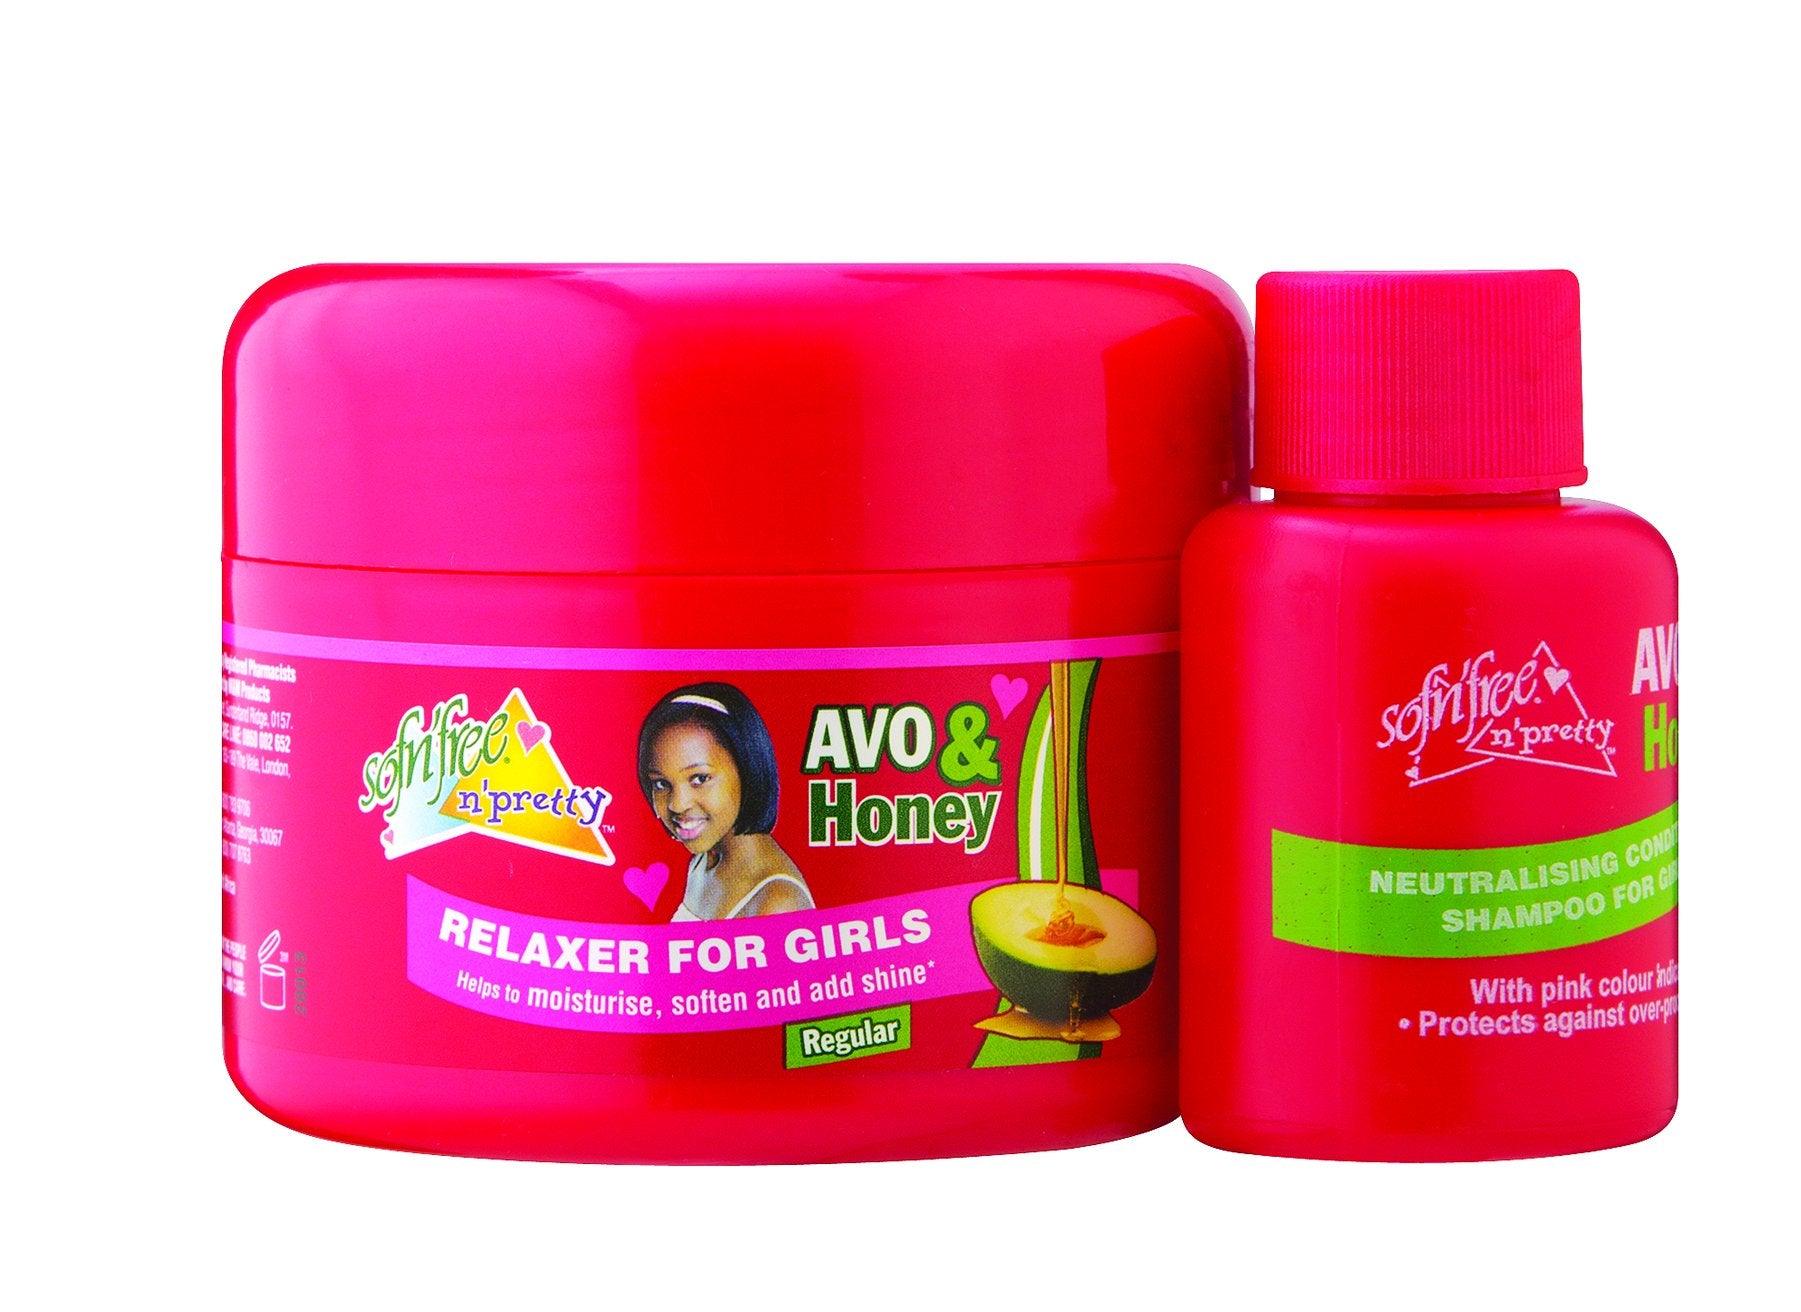 Sofnfree avo & honey relaxer for girls regular 125ml + 60ml neutralising shampoo